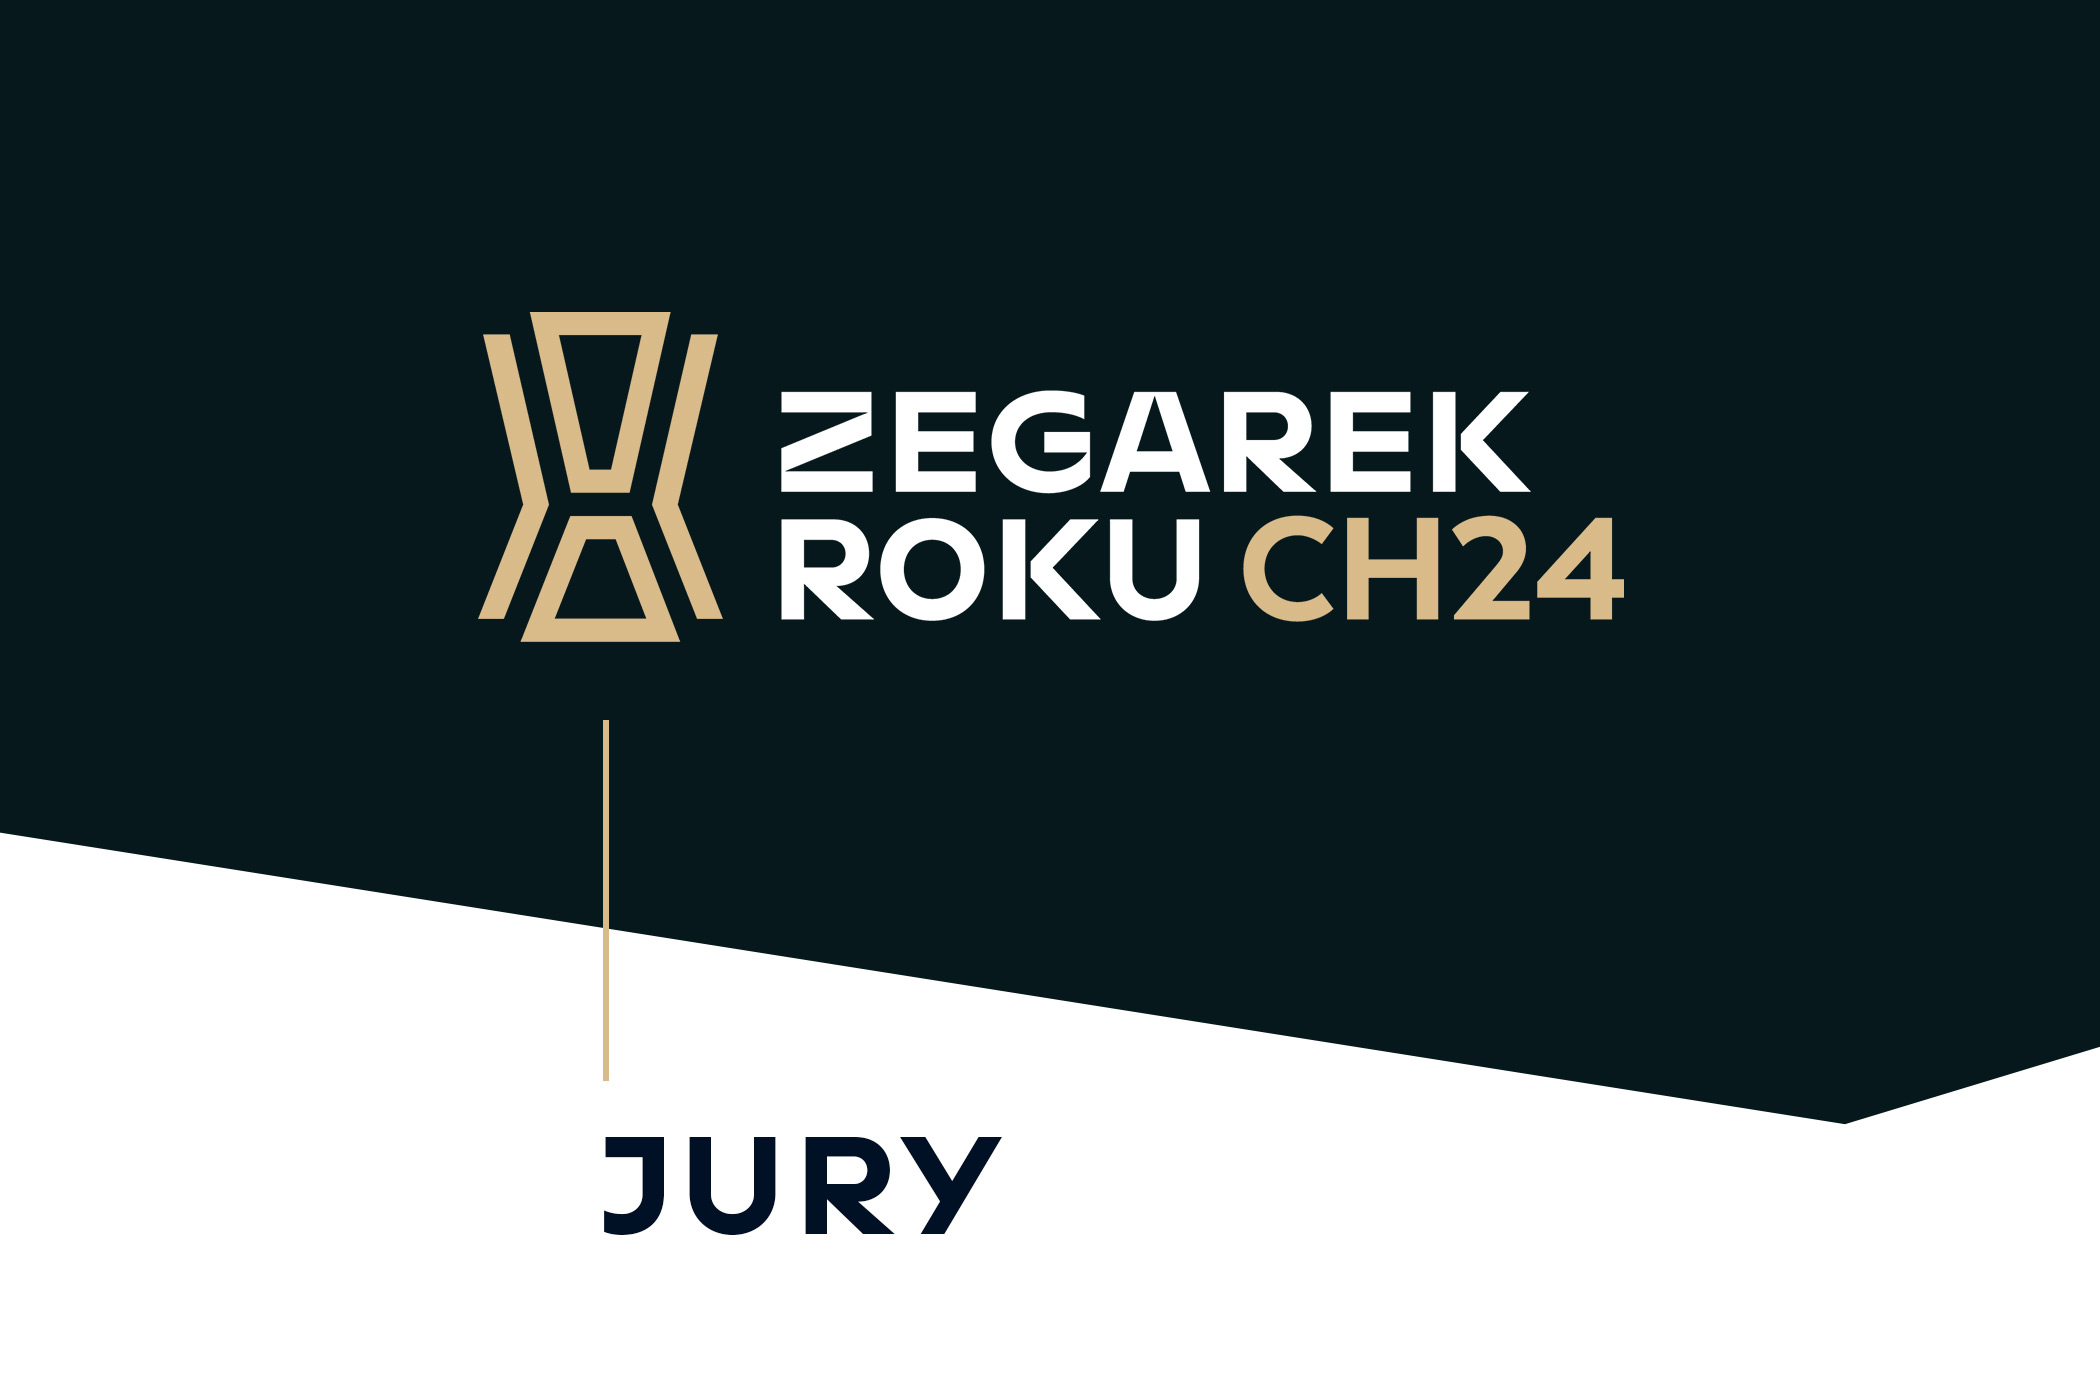 Jury - Zegarek Roku CH24